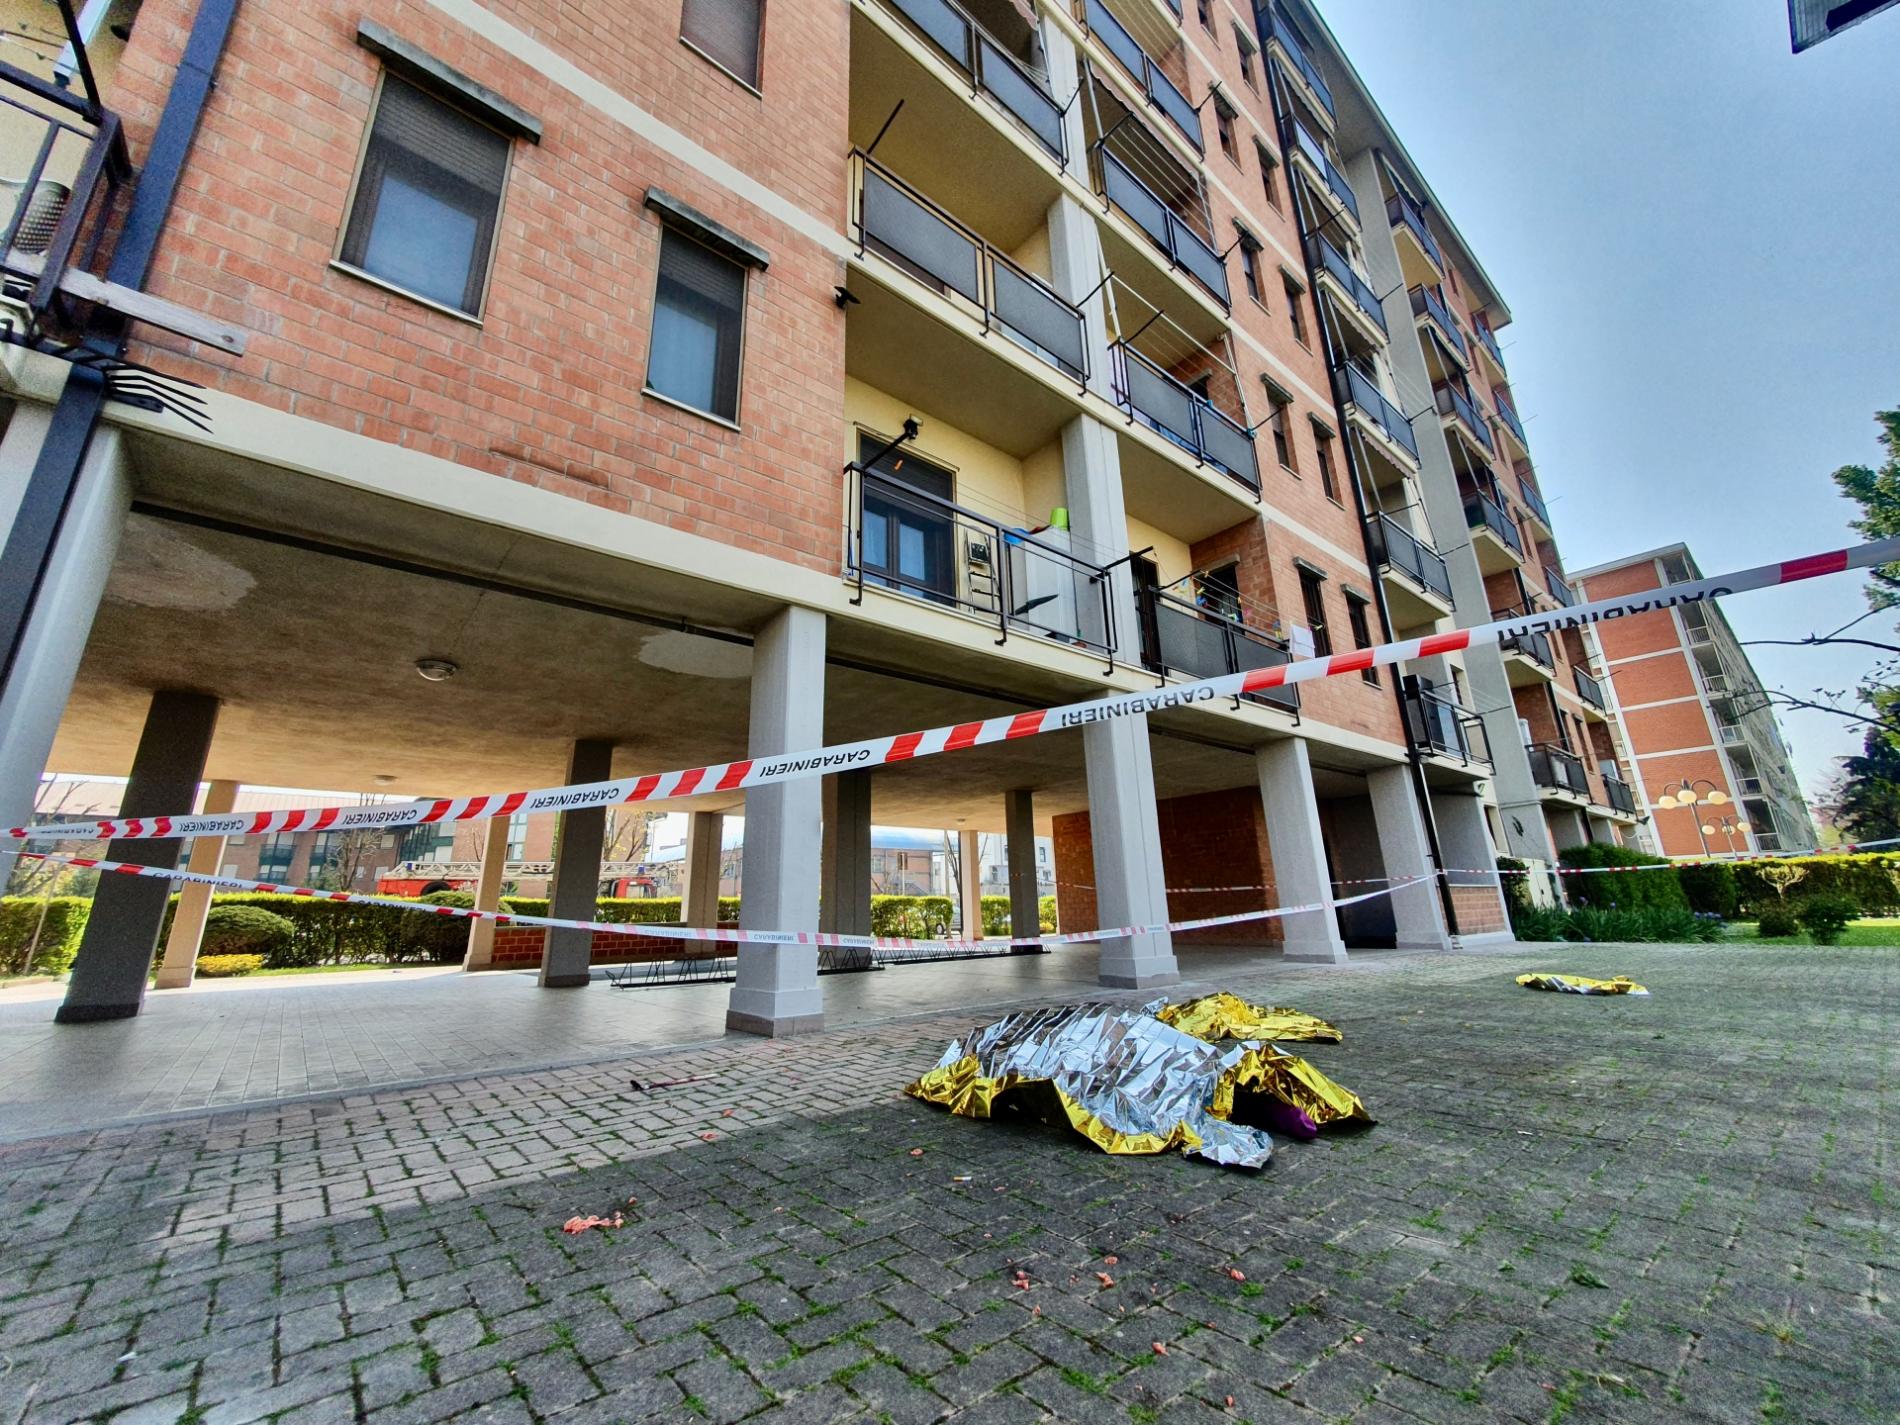 Alessandria: muore a 21anni cadendo dal balcone, si indaga ancora